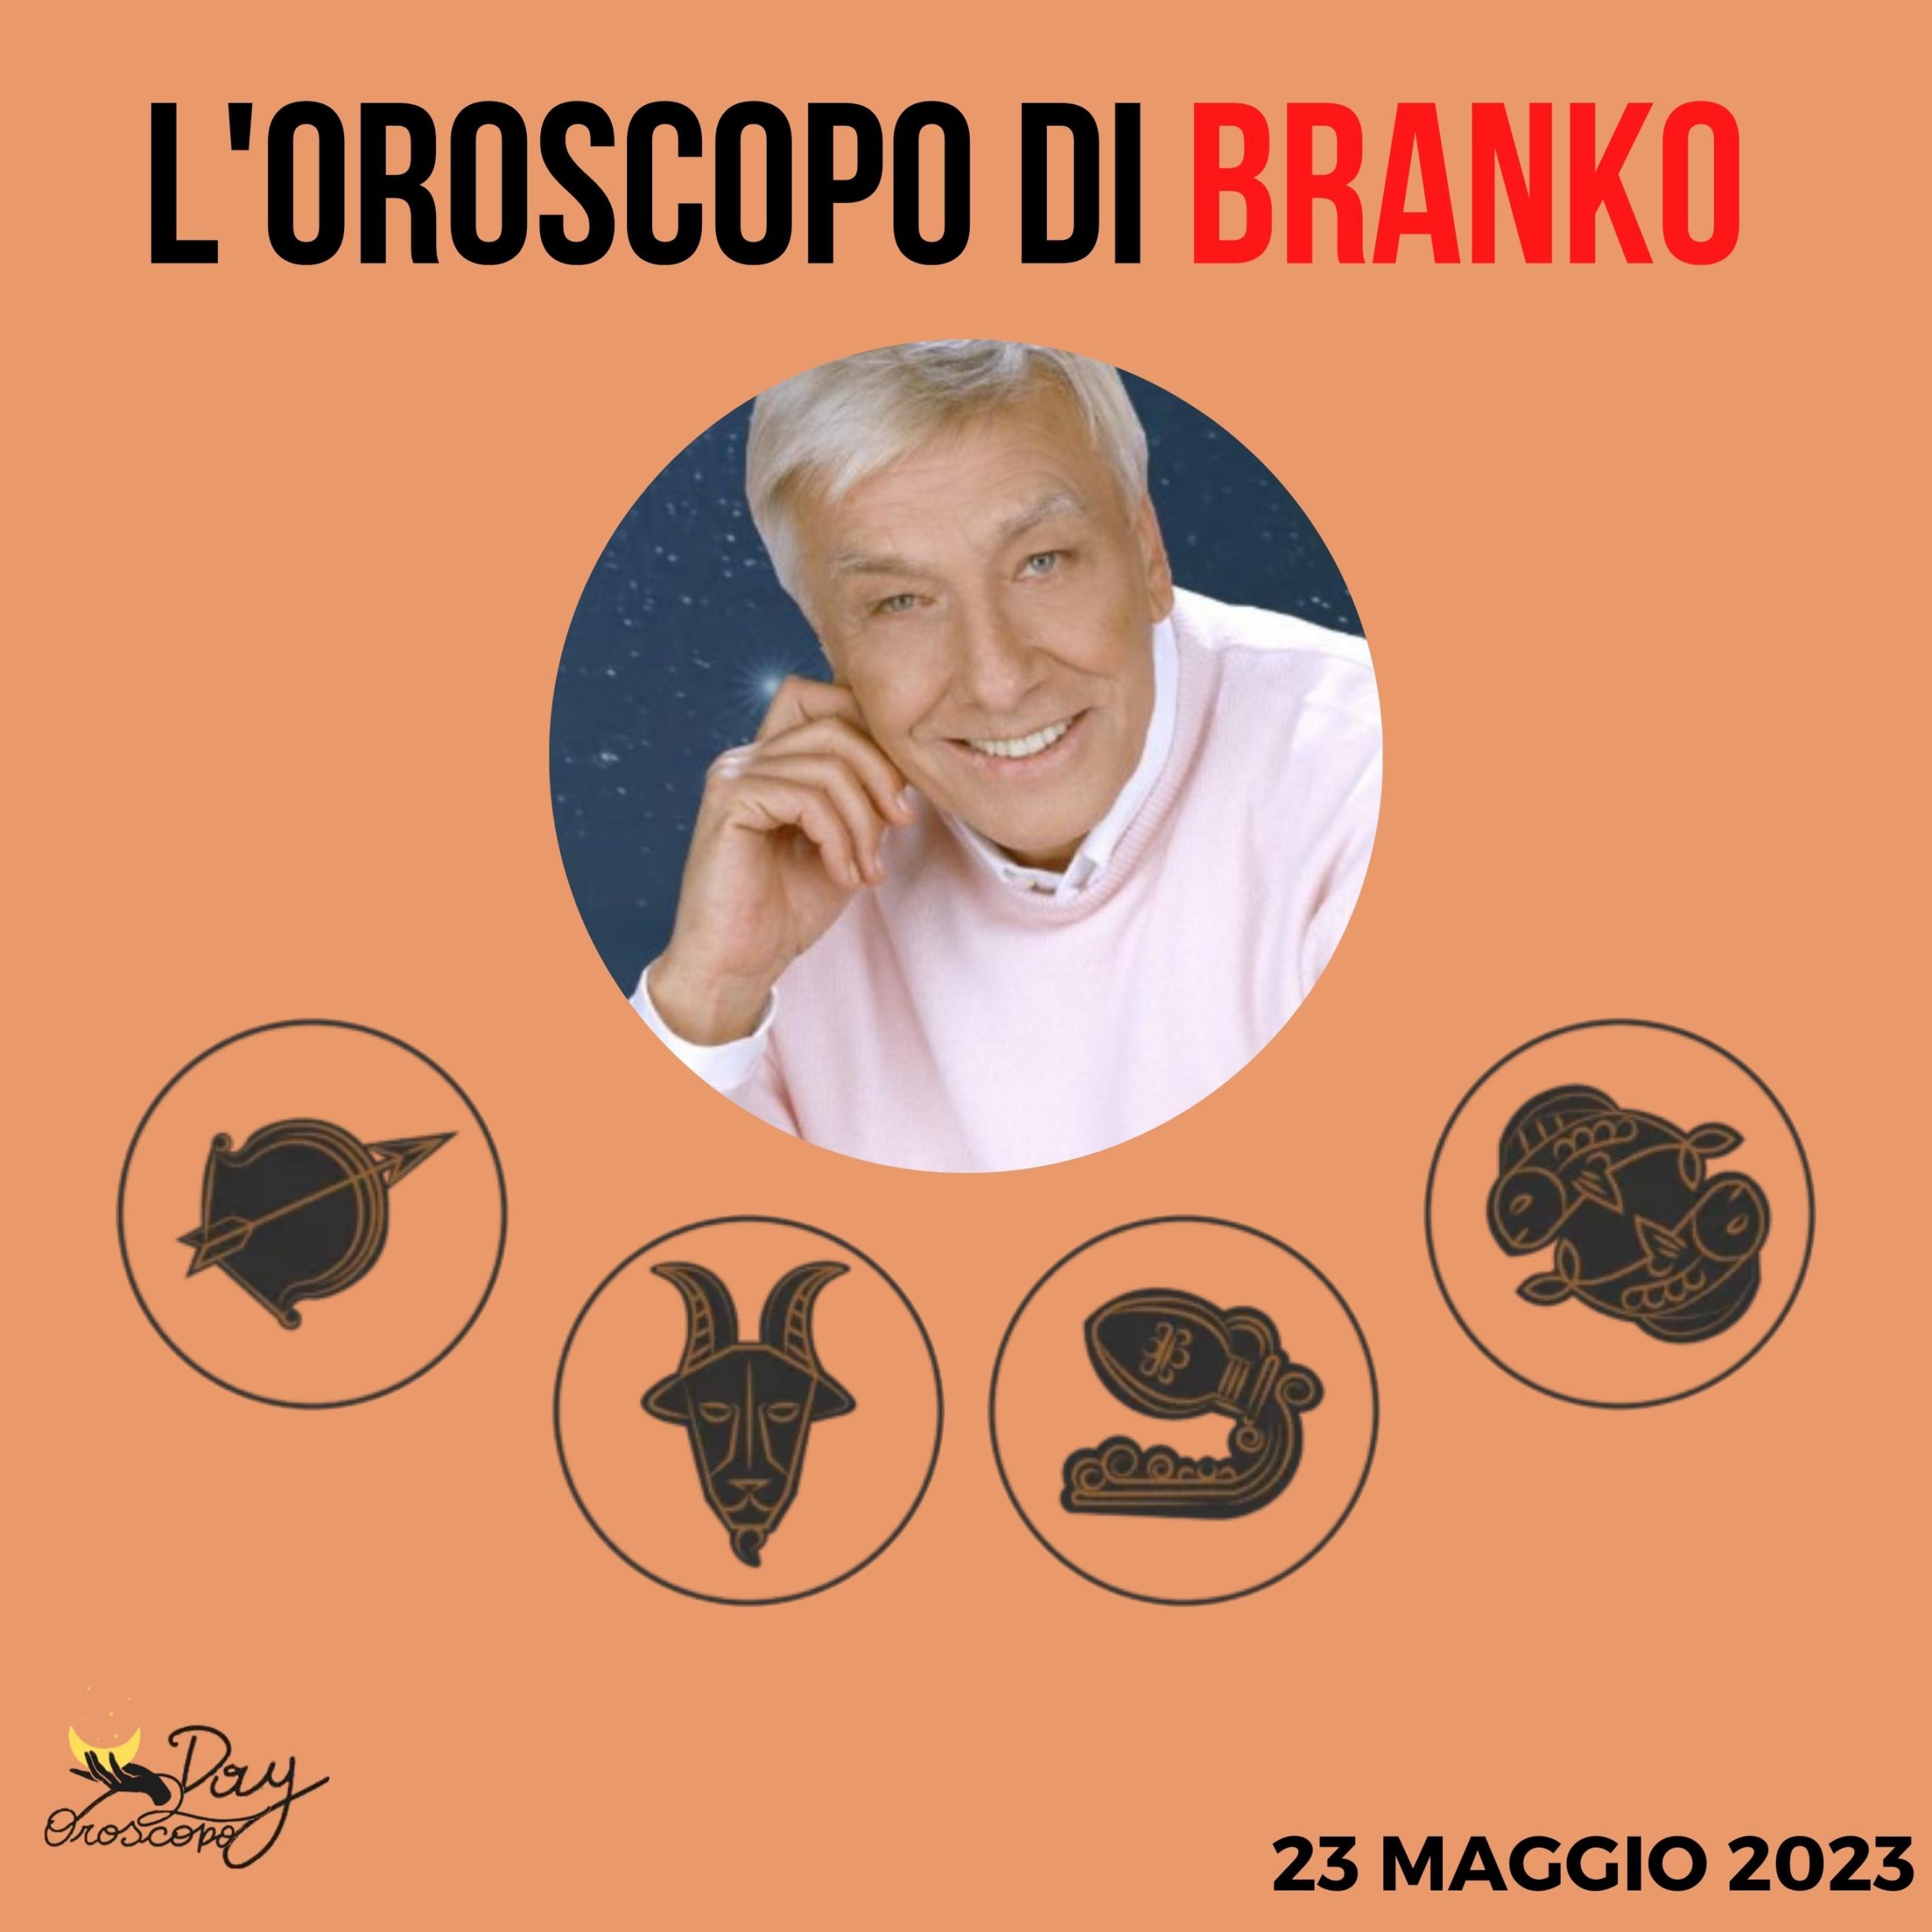 Oroscopo oggi domani Branko 23 maggio Sagittario Capricorno Acquario Pesci